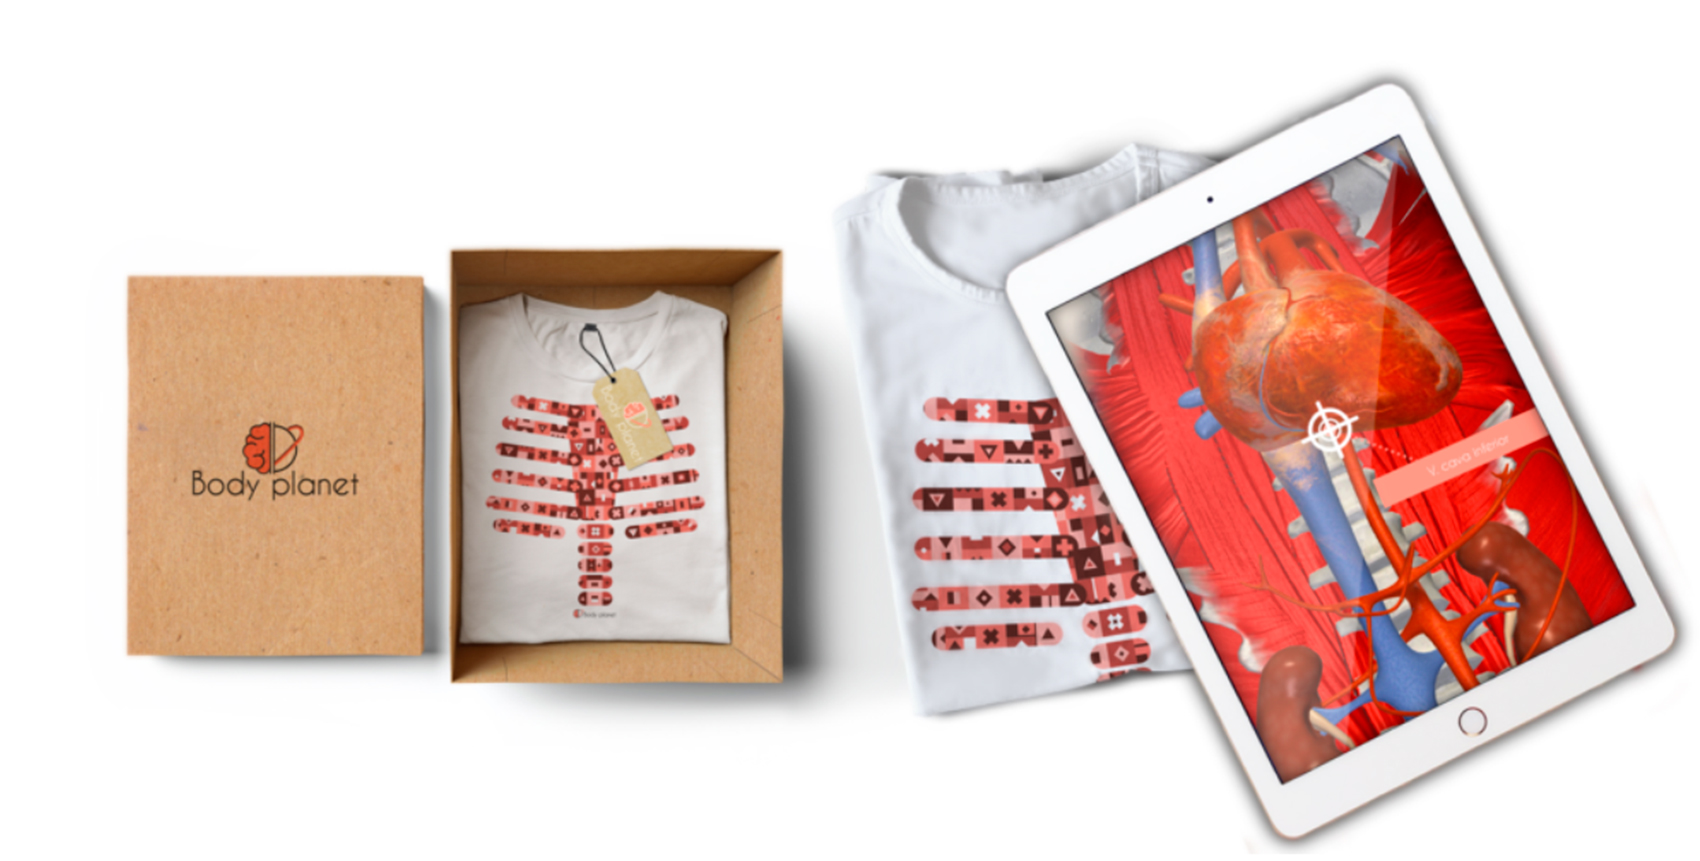 La camiseta desarrollada por Universo Body Planet permite explorar el interior del organismo con la sensacin de tener visin de rayos X...